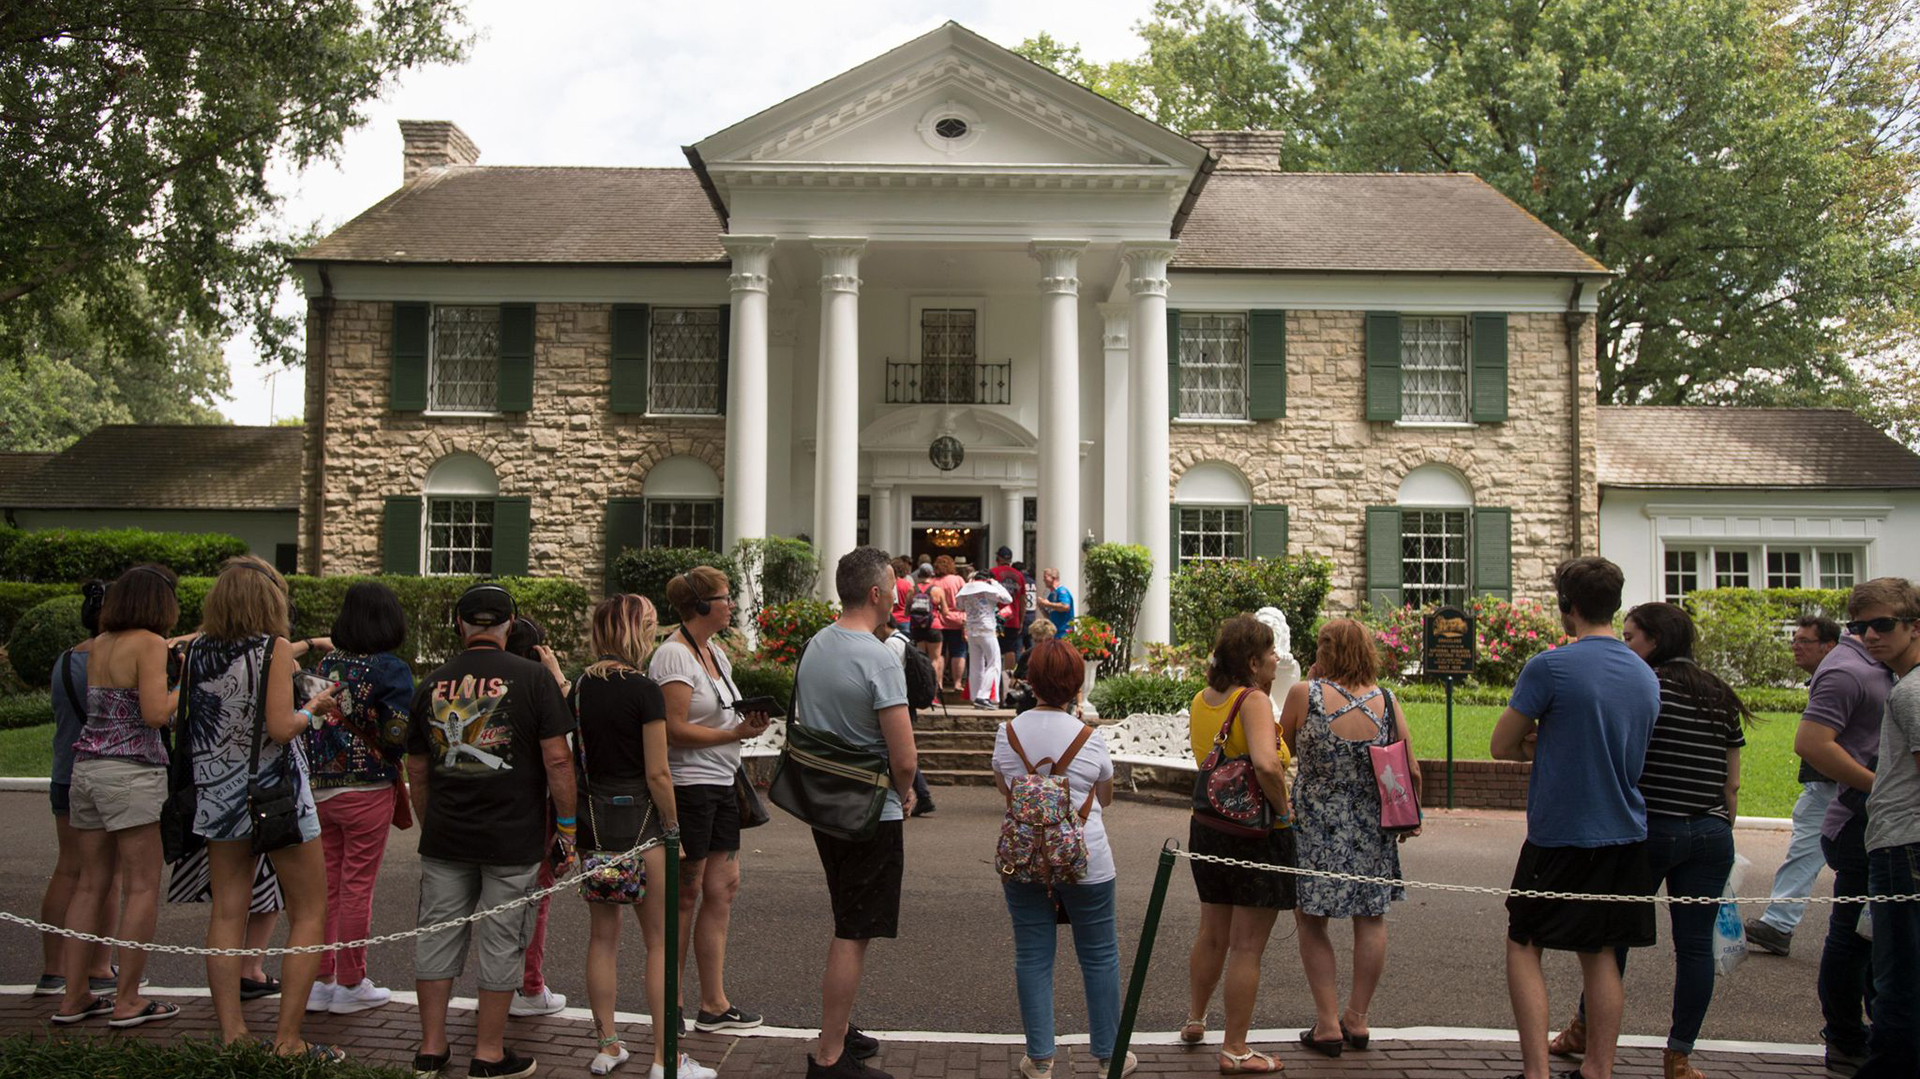 La nieta de Elvis Presley presentó una demanda para paralizar la subasta de la mansión Graceland